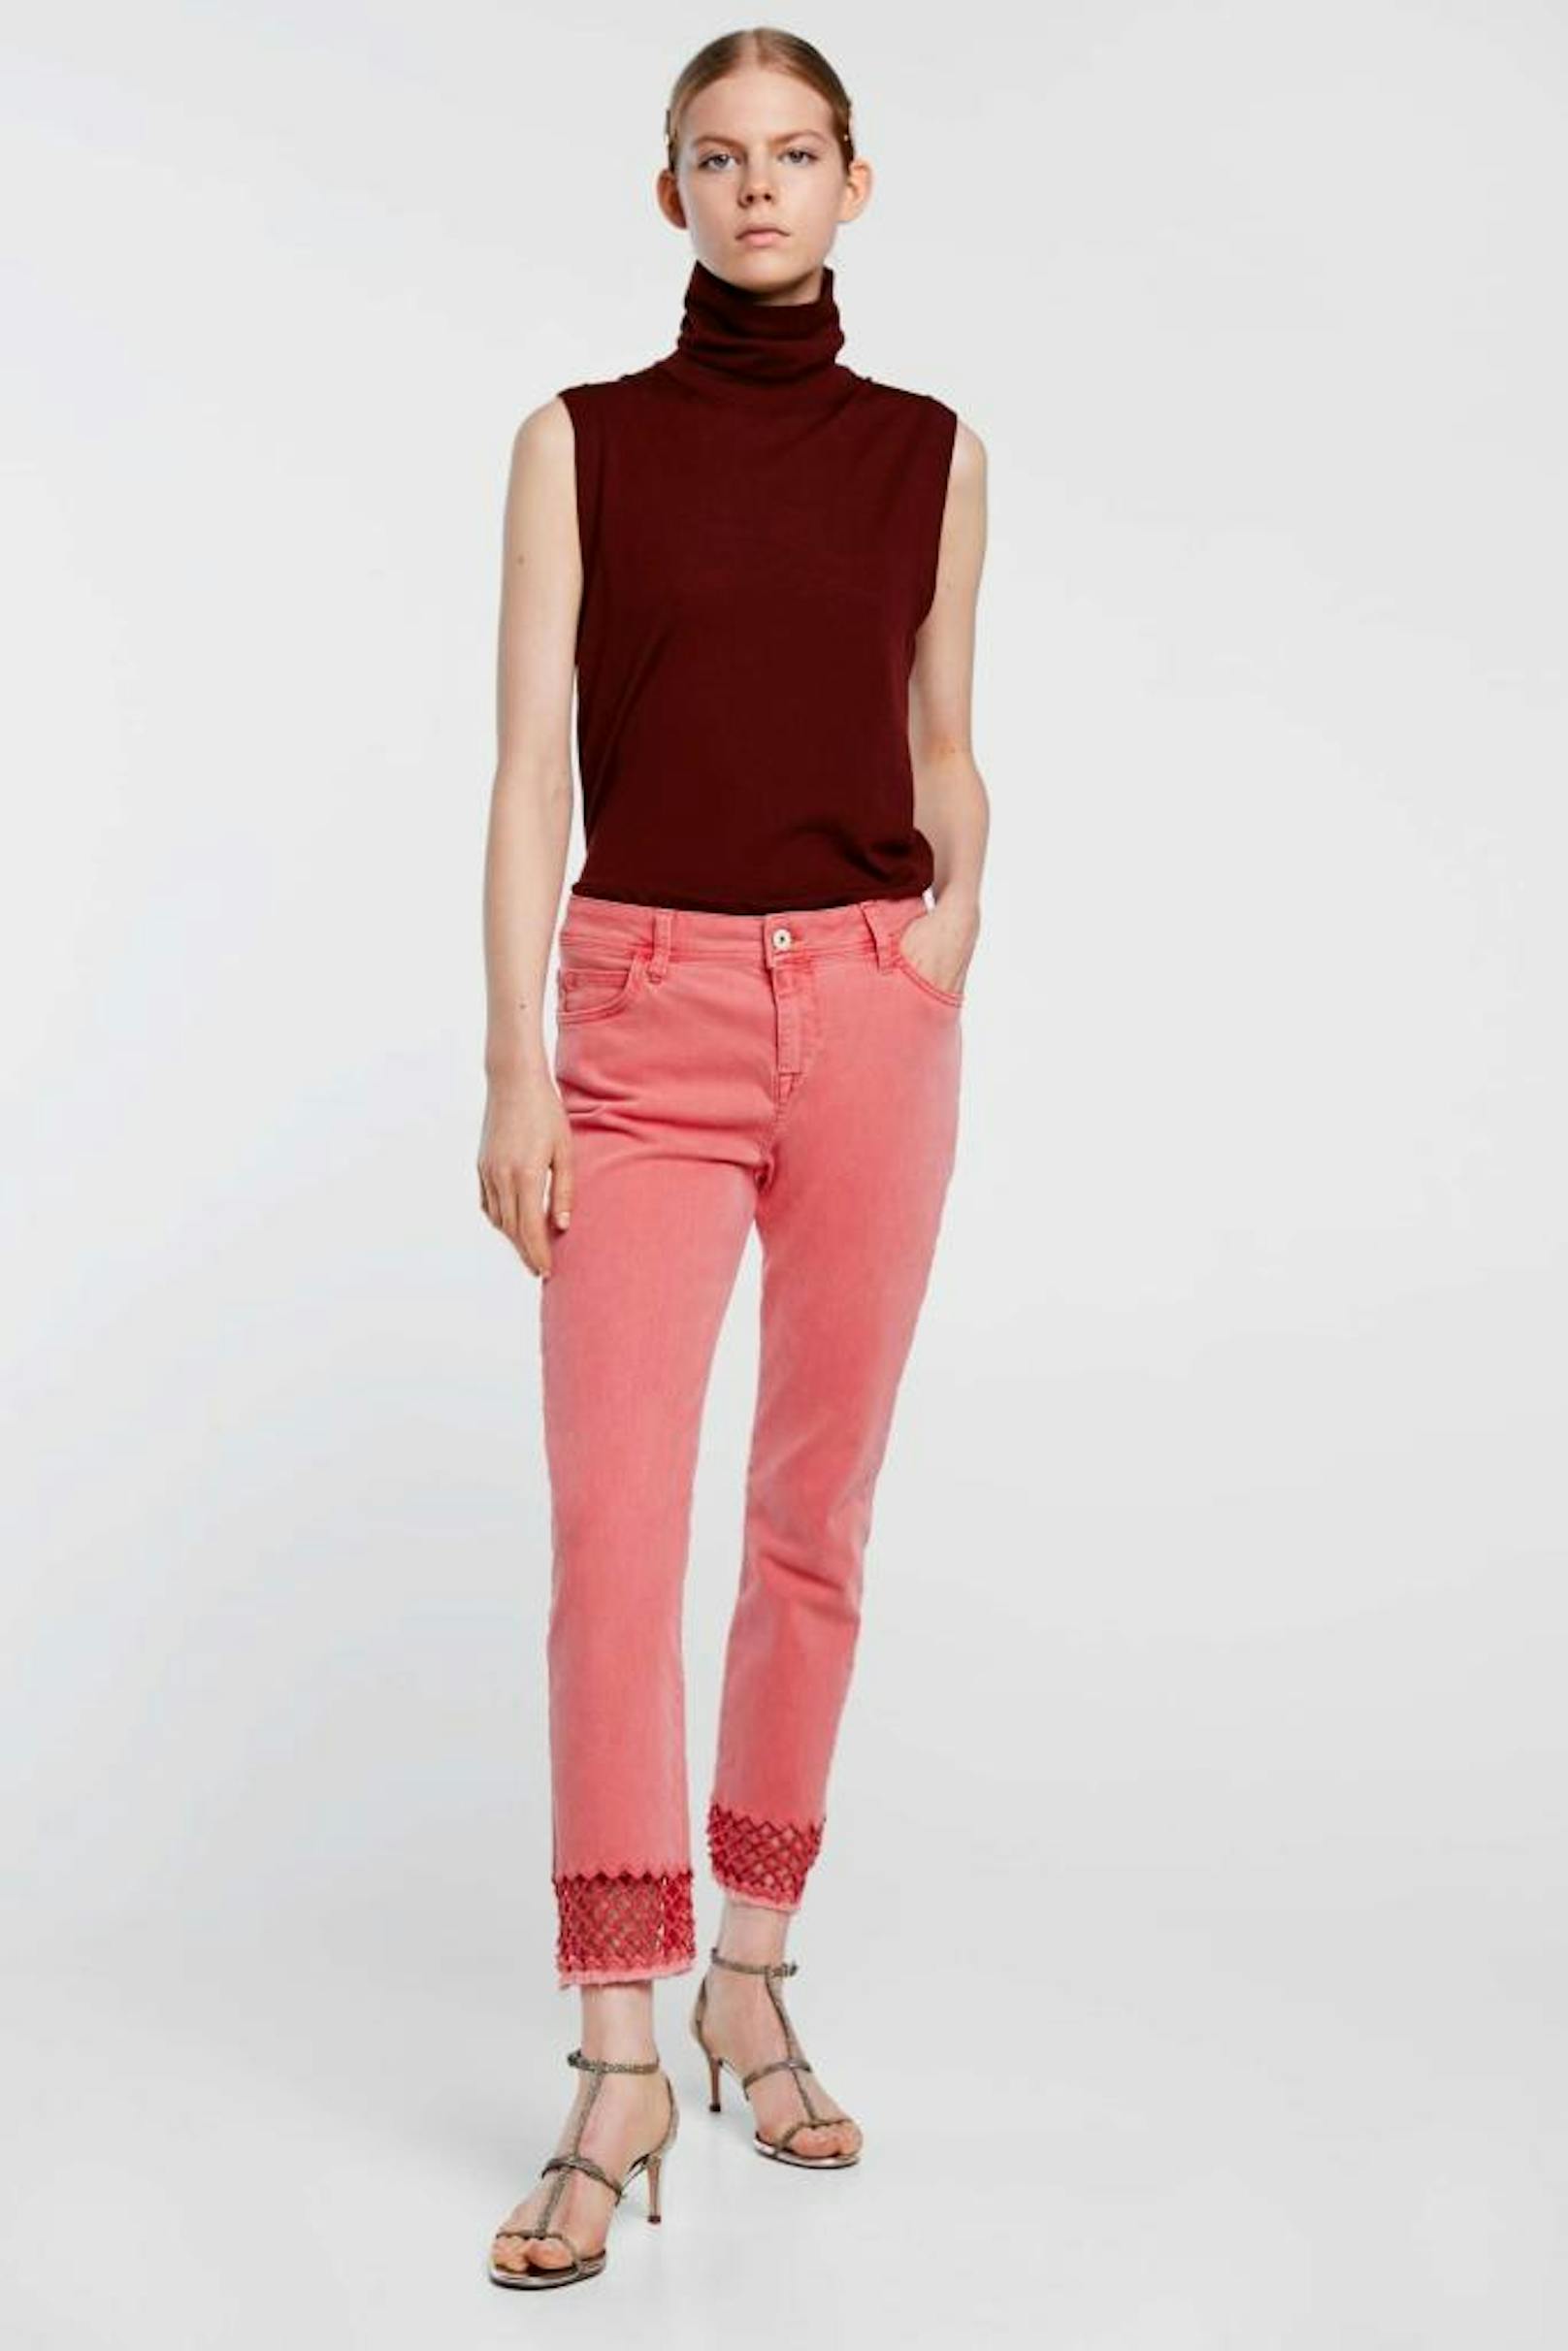 Jeans von Zara um 39,95 Euro.